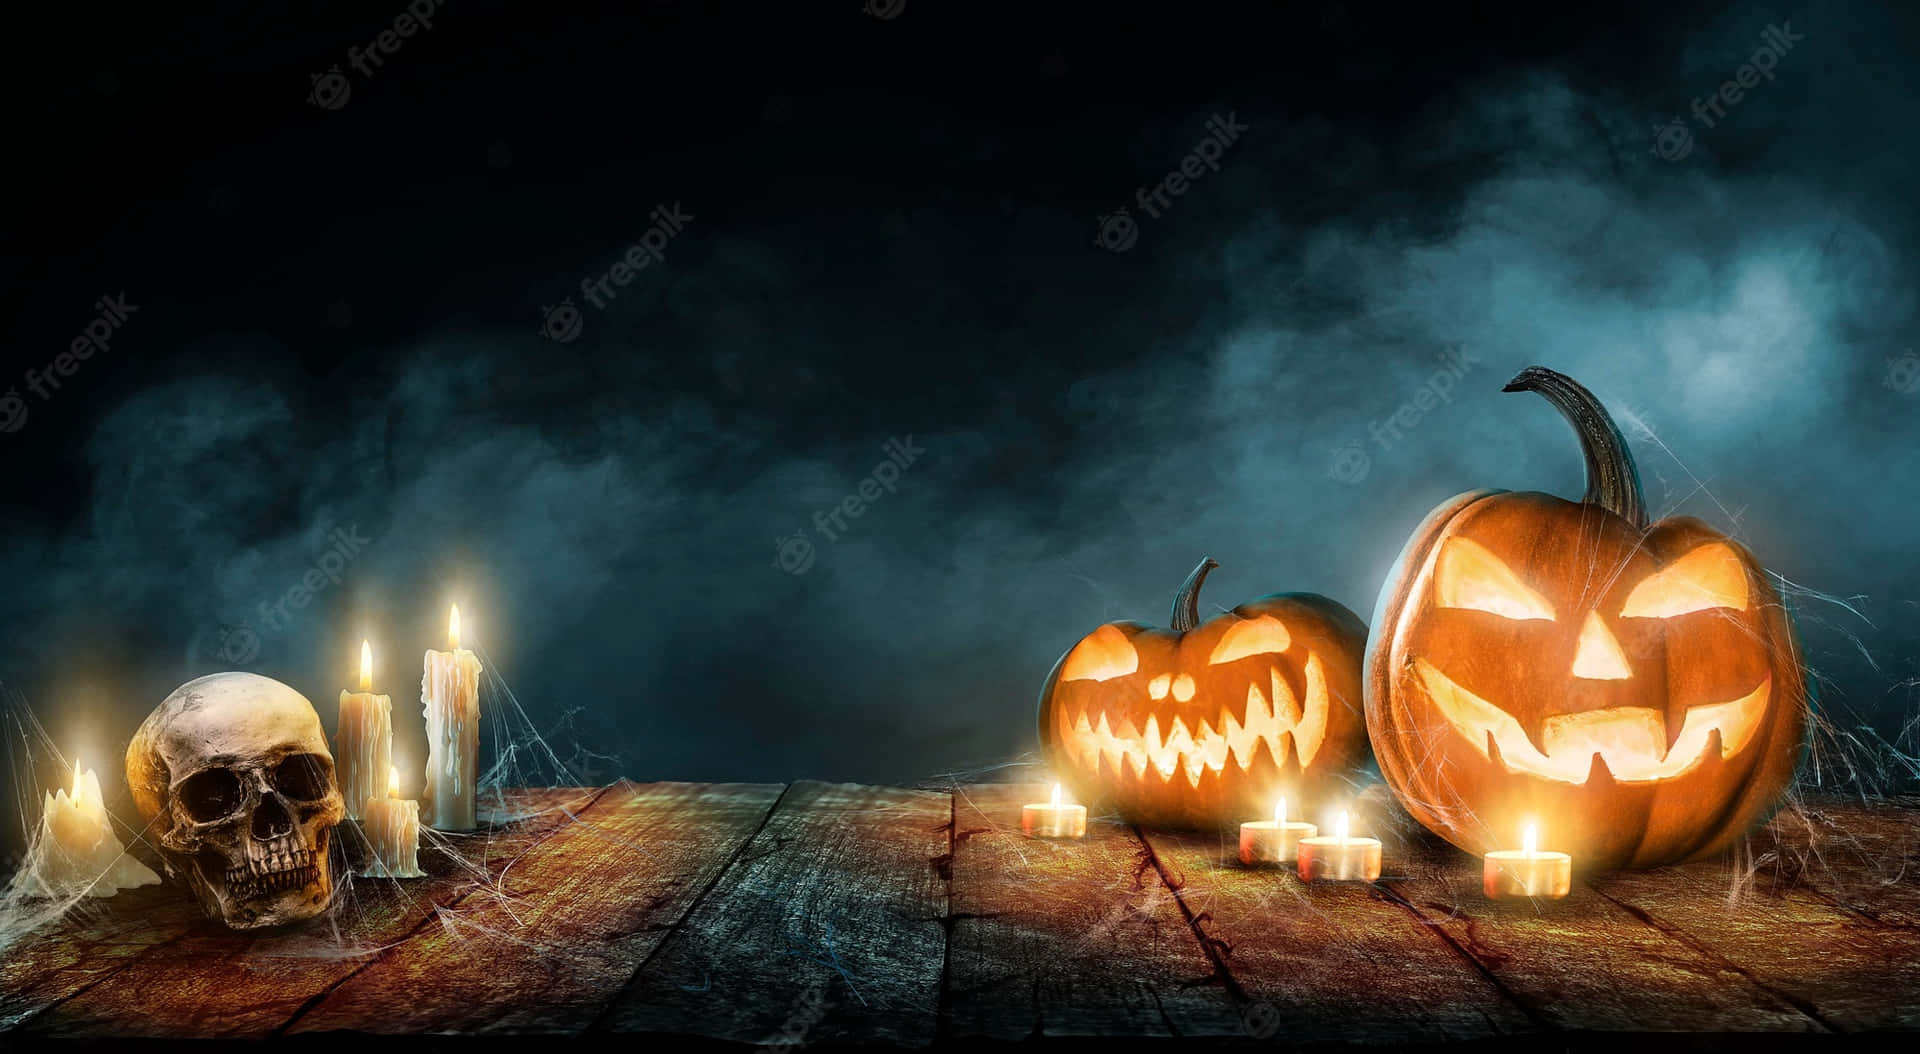 Umacena De Halloween Assustadora E Colorida, Com Neon. Papel de Parede